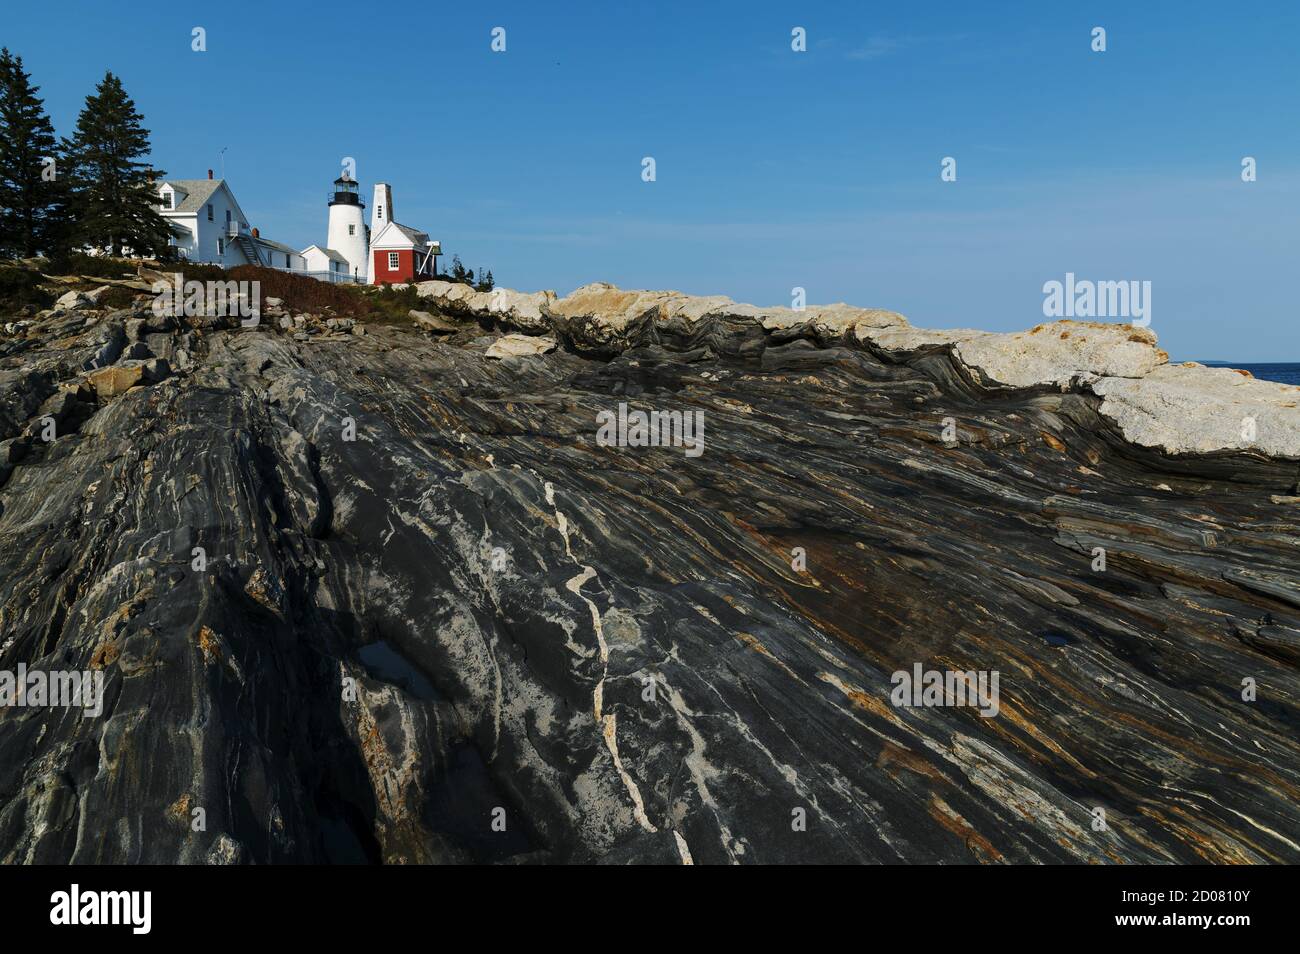 Der Leuchtturm Pemaquid Point, an der mittleren Küste von Maine, liegt auf der Spitze von speziellen metamorphen Felsformationen, die aus dem Meer emporsteigen. Stockfoto